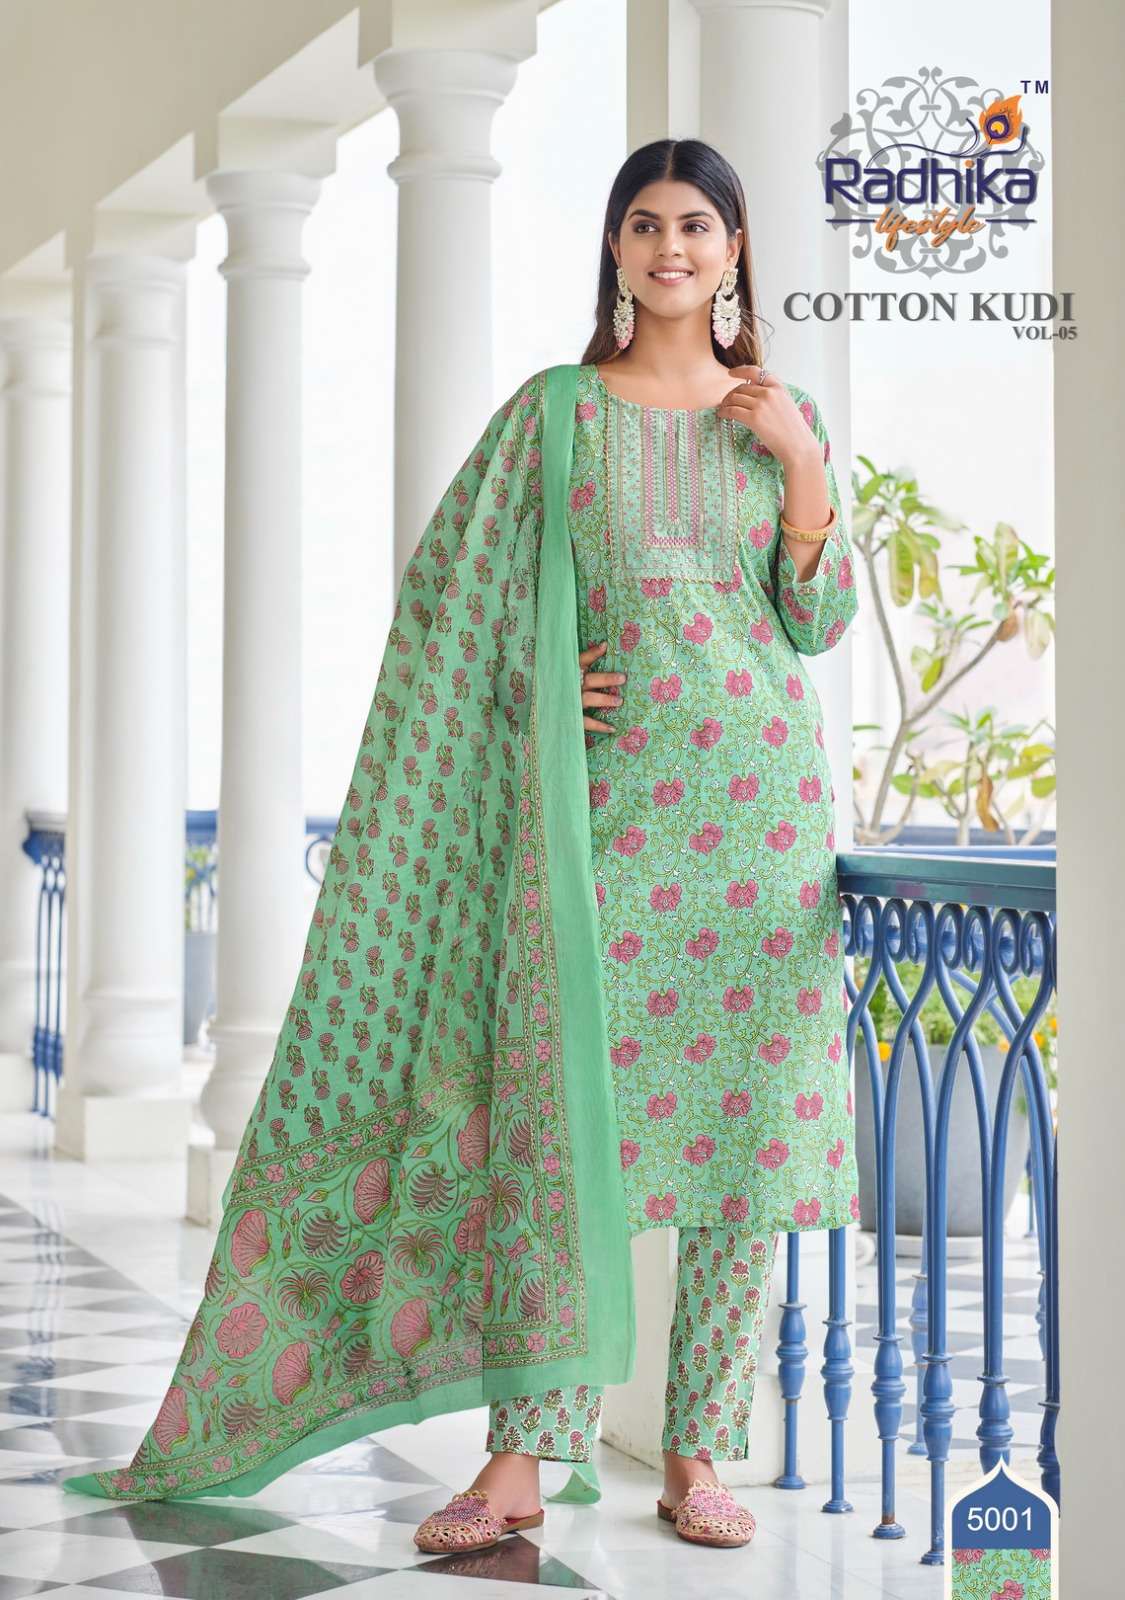 radhika lifestyle cotton kudhi vol 5 5001-5006 series cotton stich suits online best price surat 